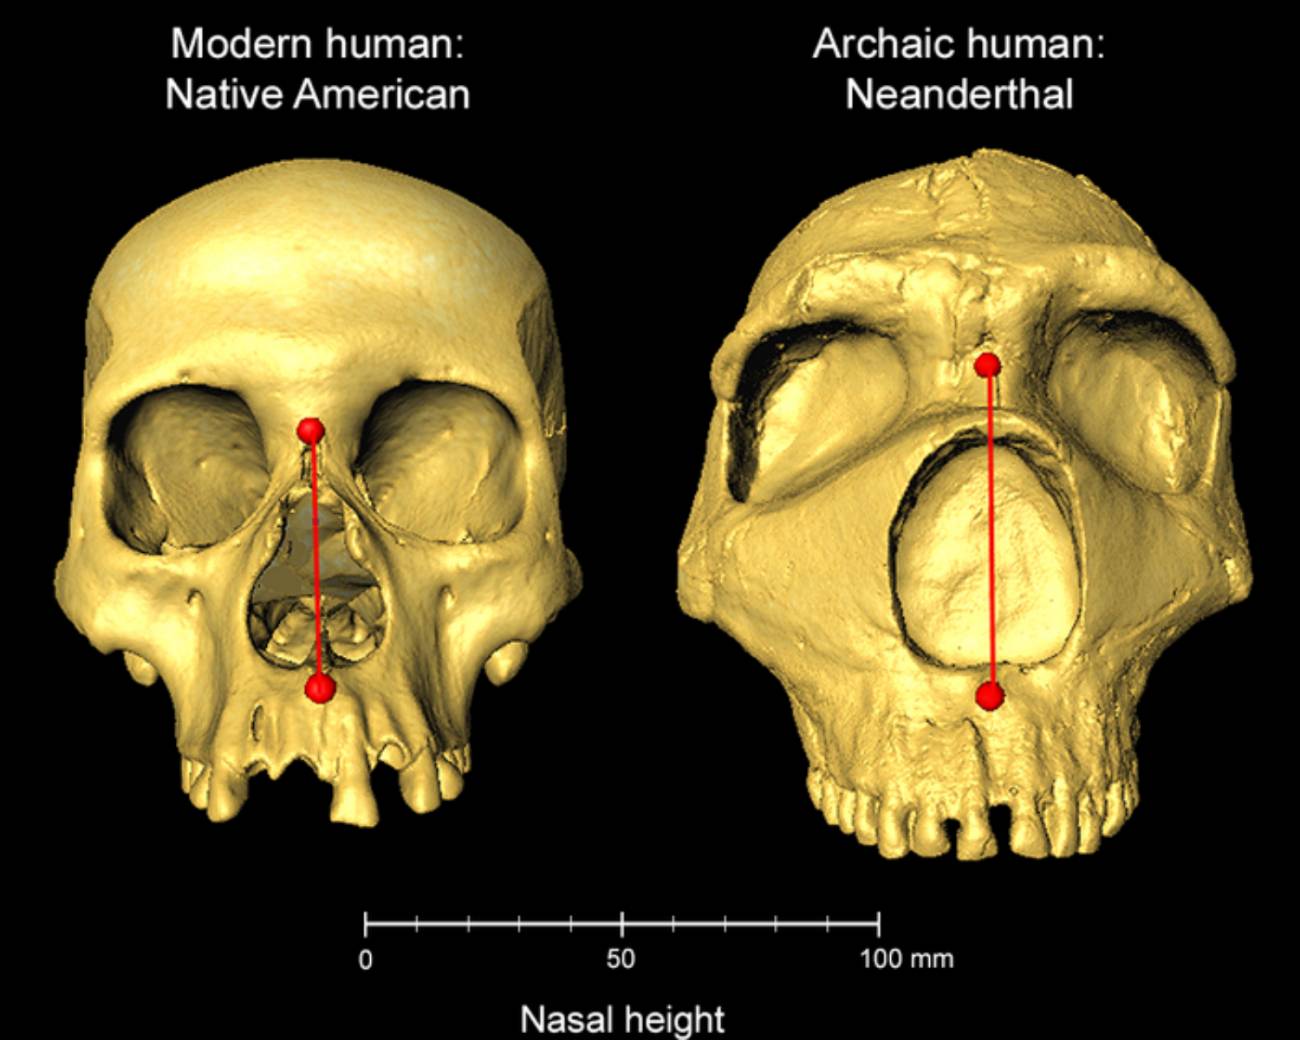 Imagen de una nariz humana moderna junto a la de un neandertal.